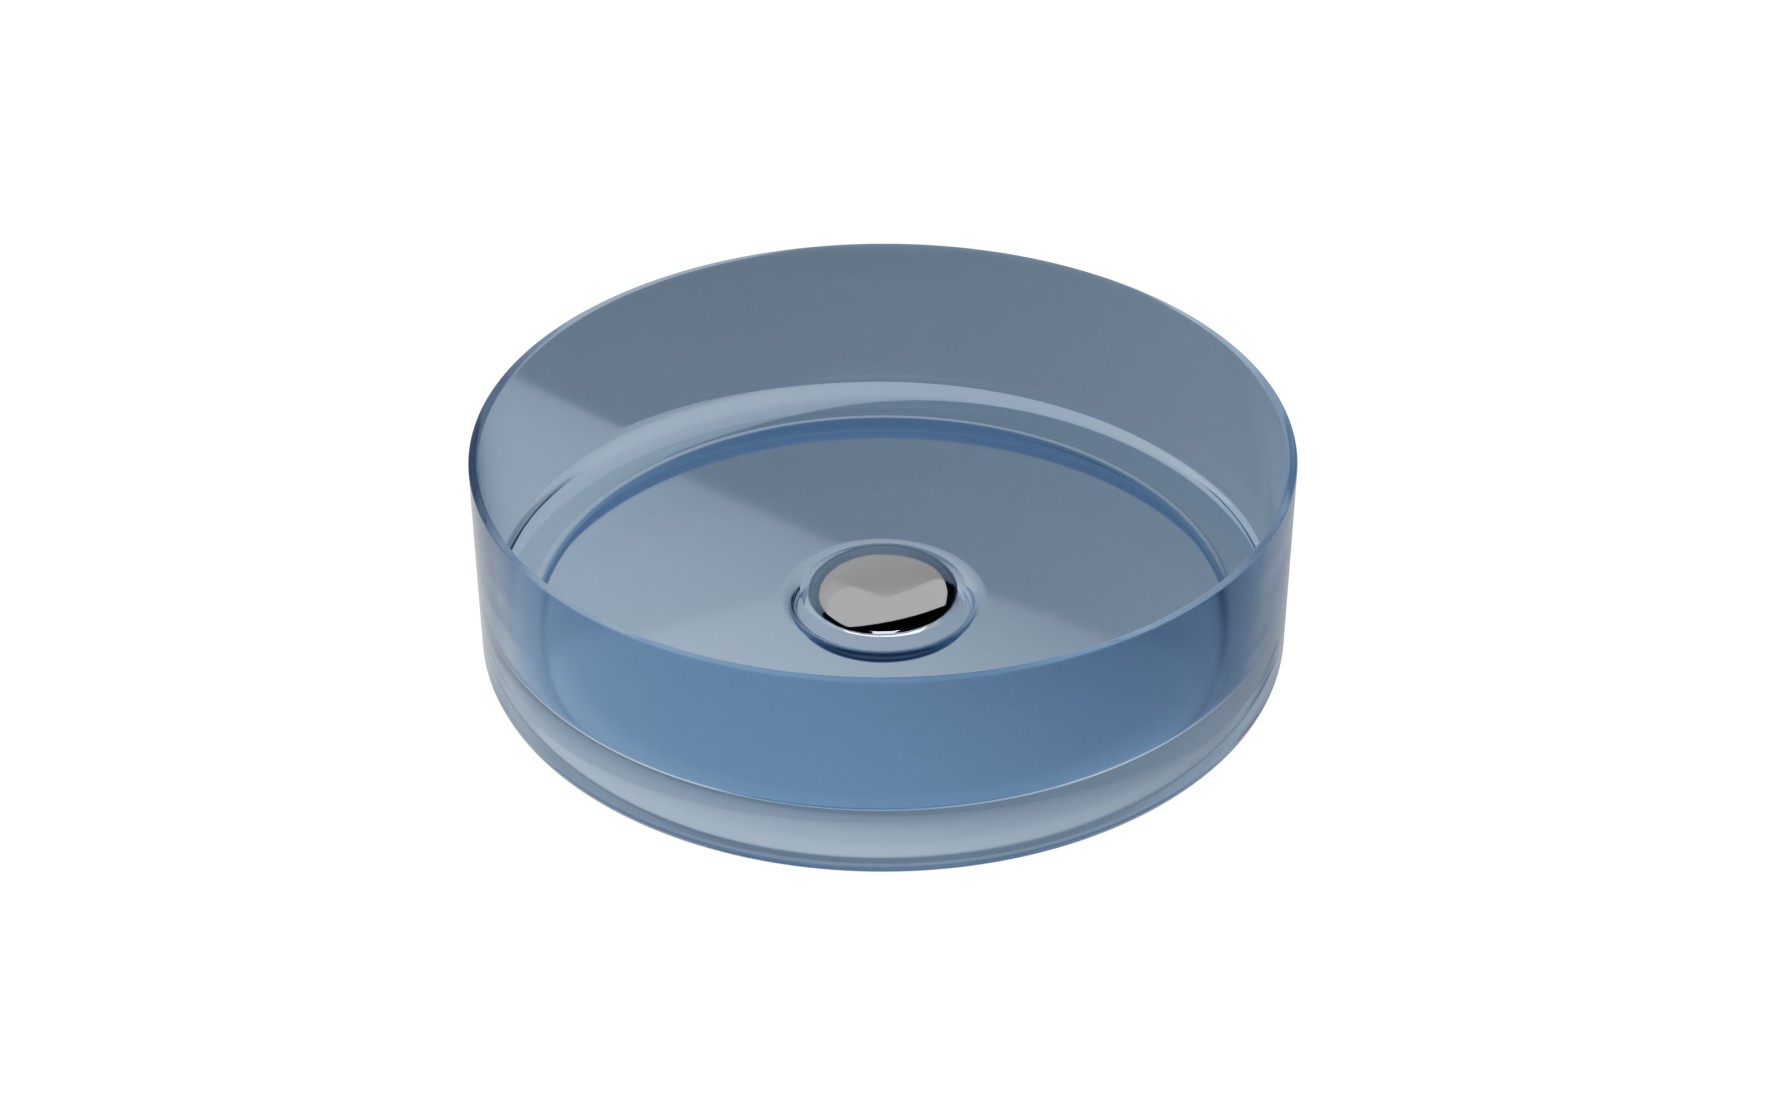 Lavoar rotund tip bol Besco Enya d 36cm ResiCast transparent ventil click-clack crom Blue Wave